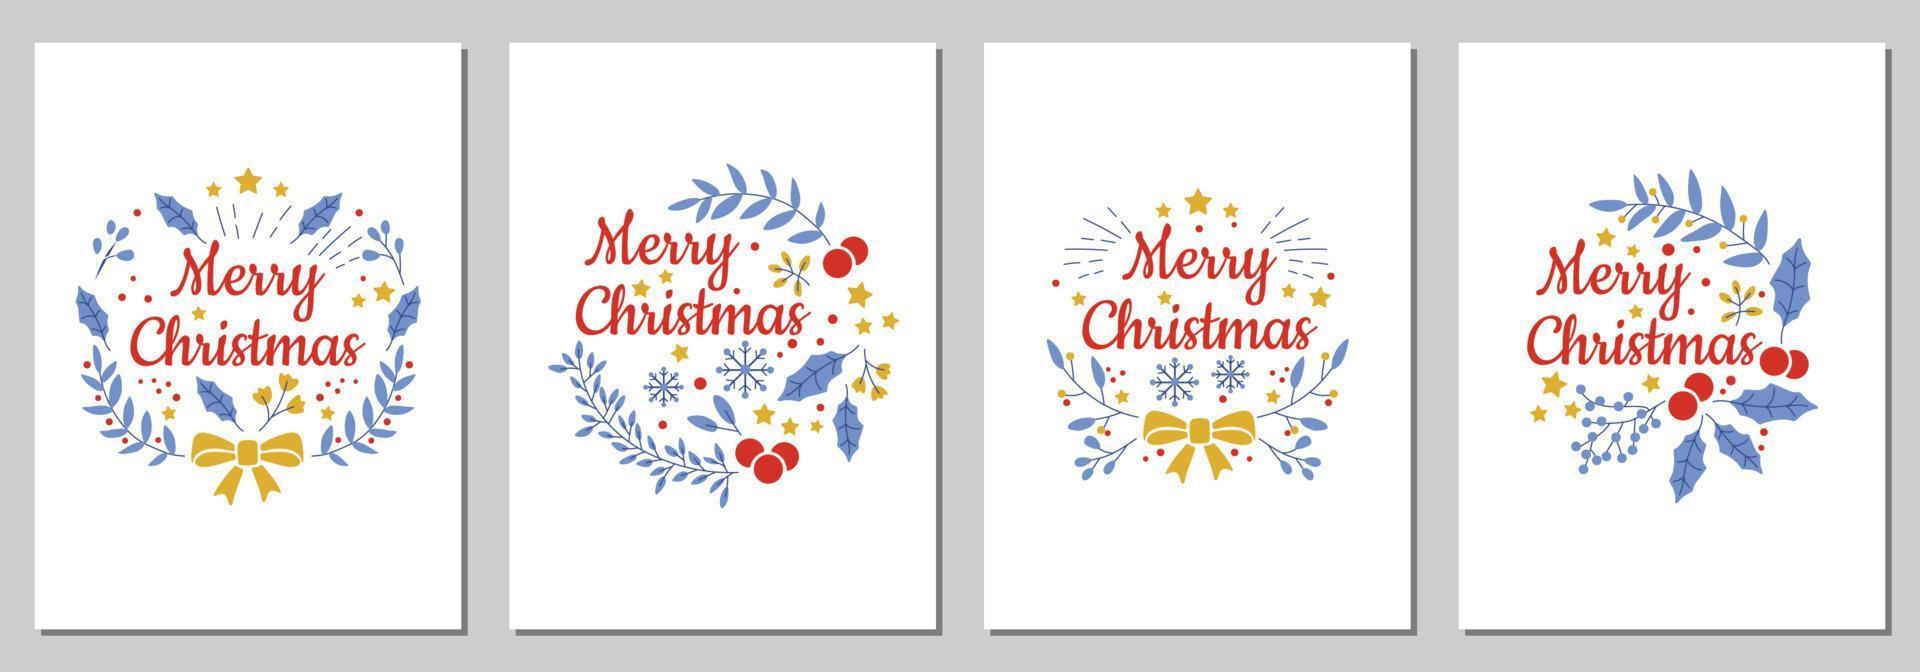 tarjetas navideñas con feliz navidad con adornos navideños y diseño tipográfico. ilustración vectorial vector